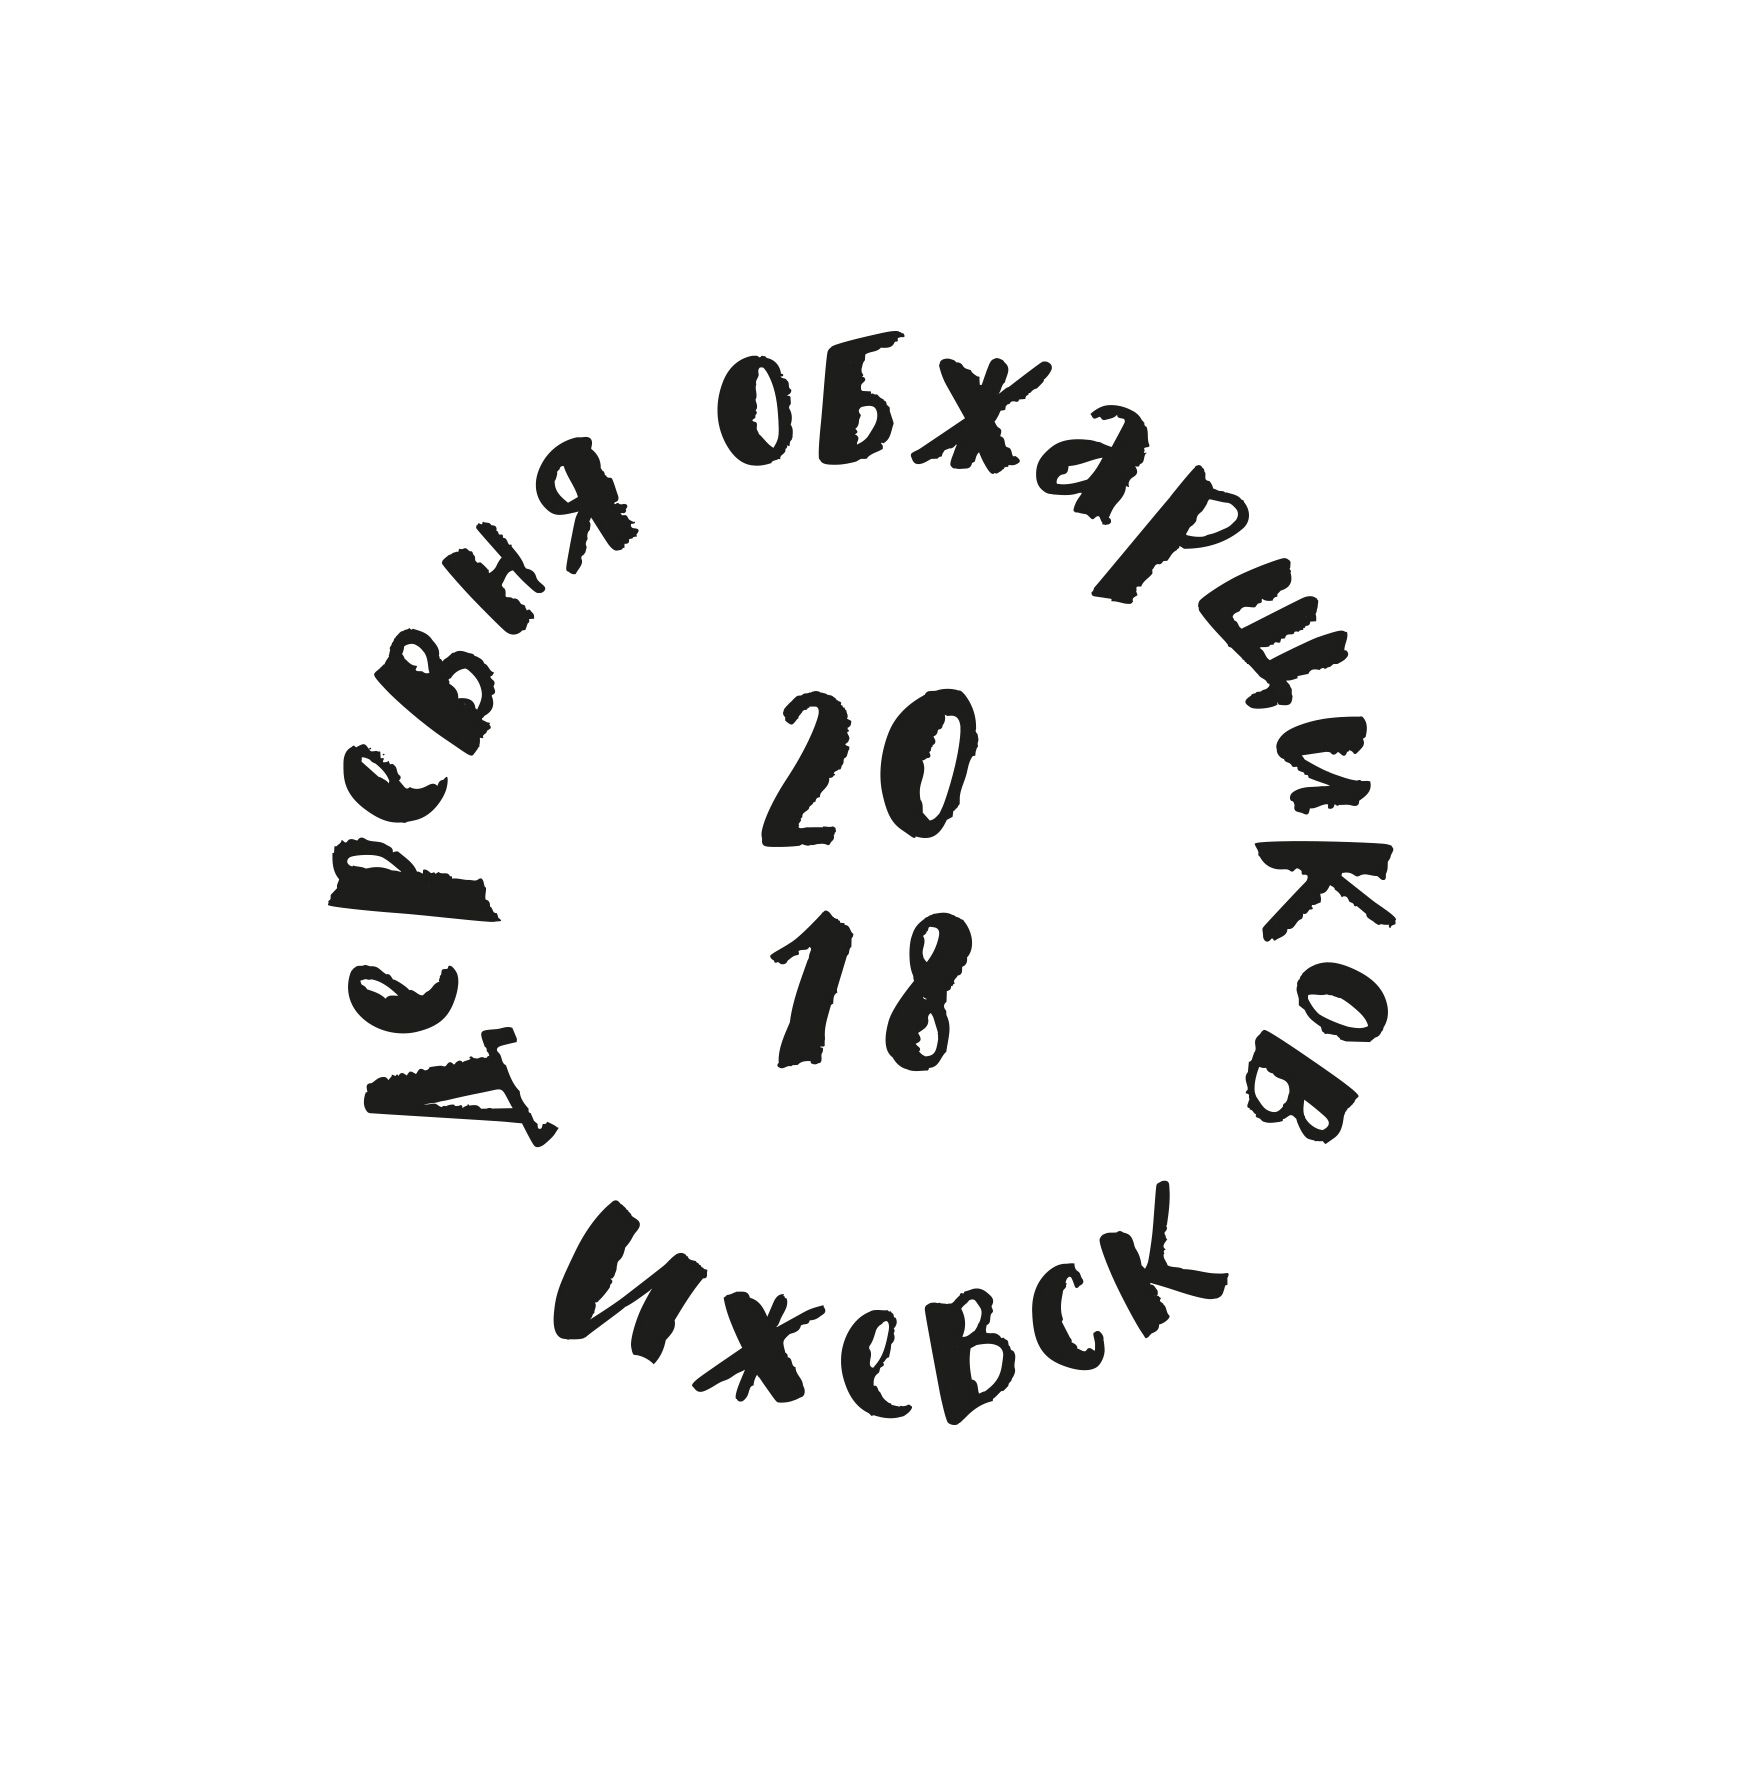 логотип фестиваля деревня обжарщиков кофе 2018 – Мухина Дизайн